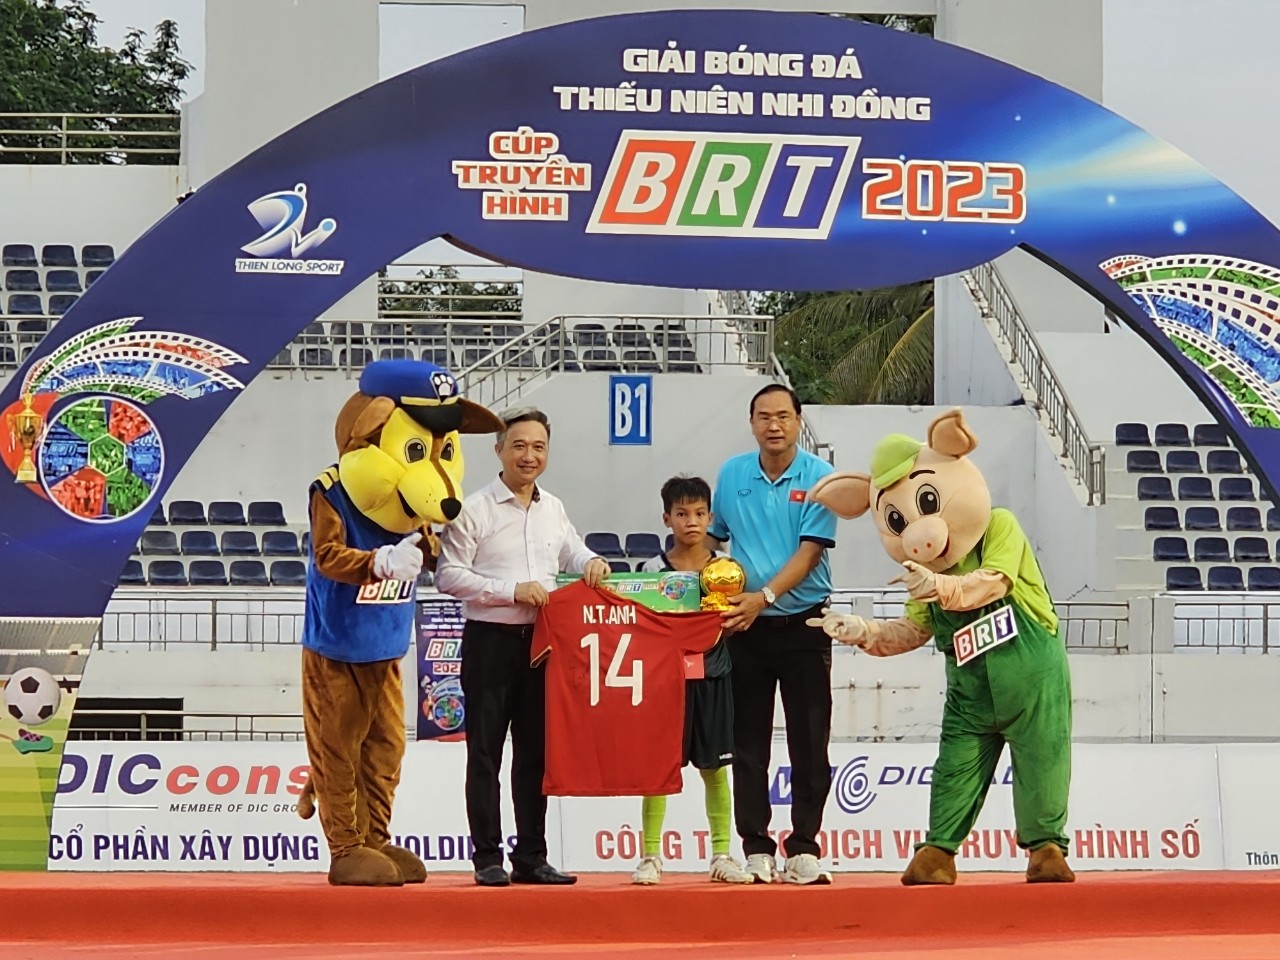 Phó chủ tịch UBND tỉnh Bà Rịa – Vũng Tàu Đặng Minh Thông trao thưởng ở giải bóng đá thiếu niên nhi đồng - Cúp BRT